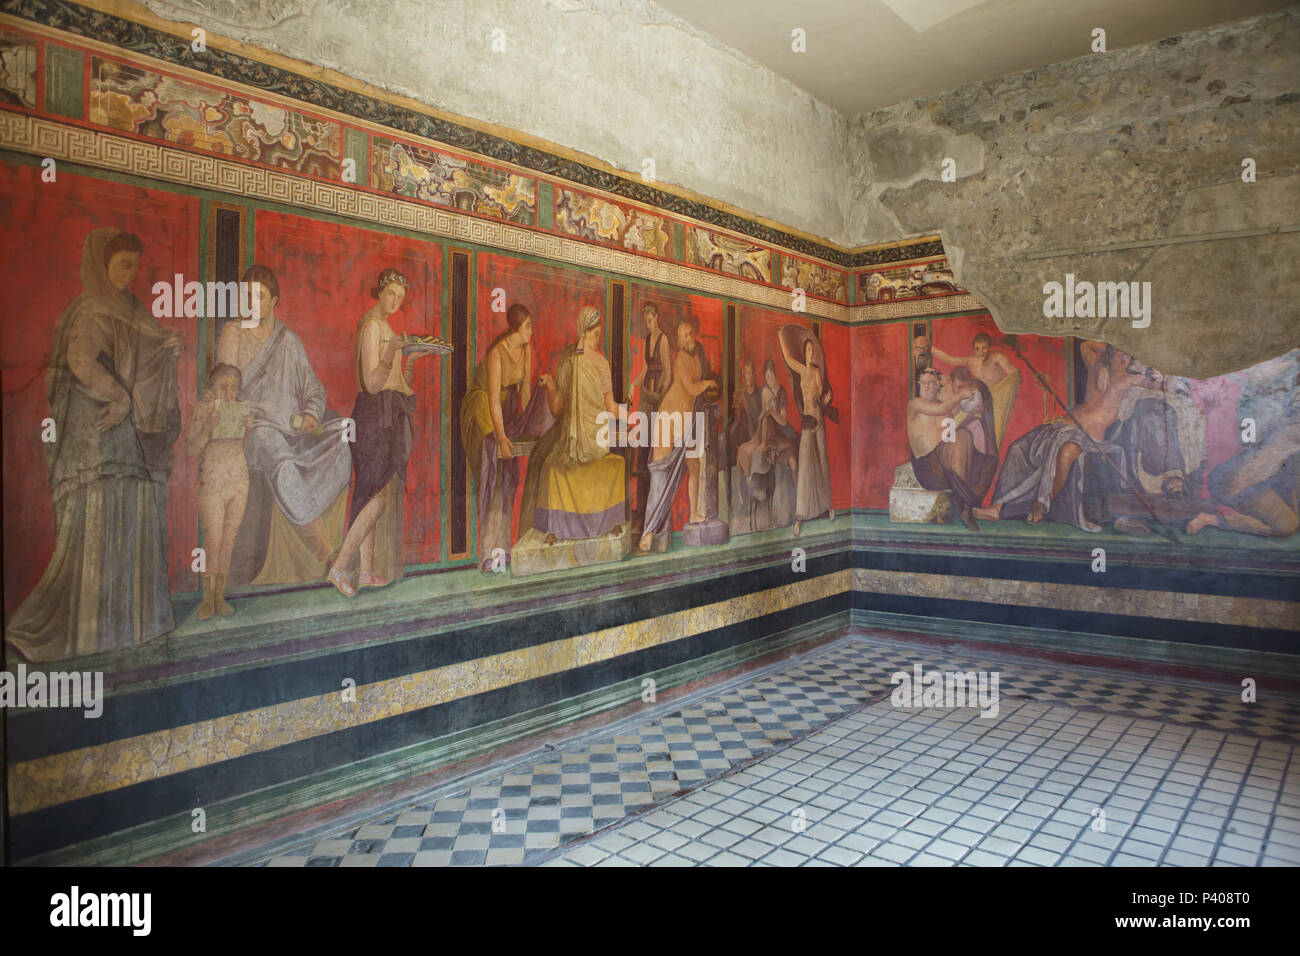 Dionysischen Mysterien (Bacchian Geheimnisse) im Römischen Fresken in den Triclinium (Römische Speisesaal) in der Villa der Mysterien (Villa dei Misteri) in die archäologische Stätte von Pompeji (Pompei) in der Nähe von Neapel, Kampanien, Italien dargestellt. Einleitung Ritus von der geheimnisvollen Kult des Dionysos (Bacchus) ist wahrscheinlich in der Fresken dargestellt. Stockfoto